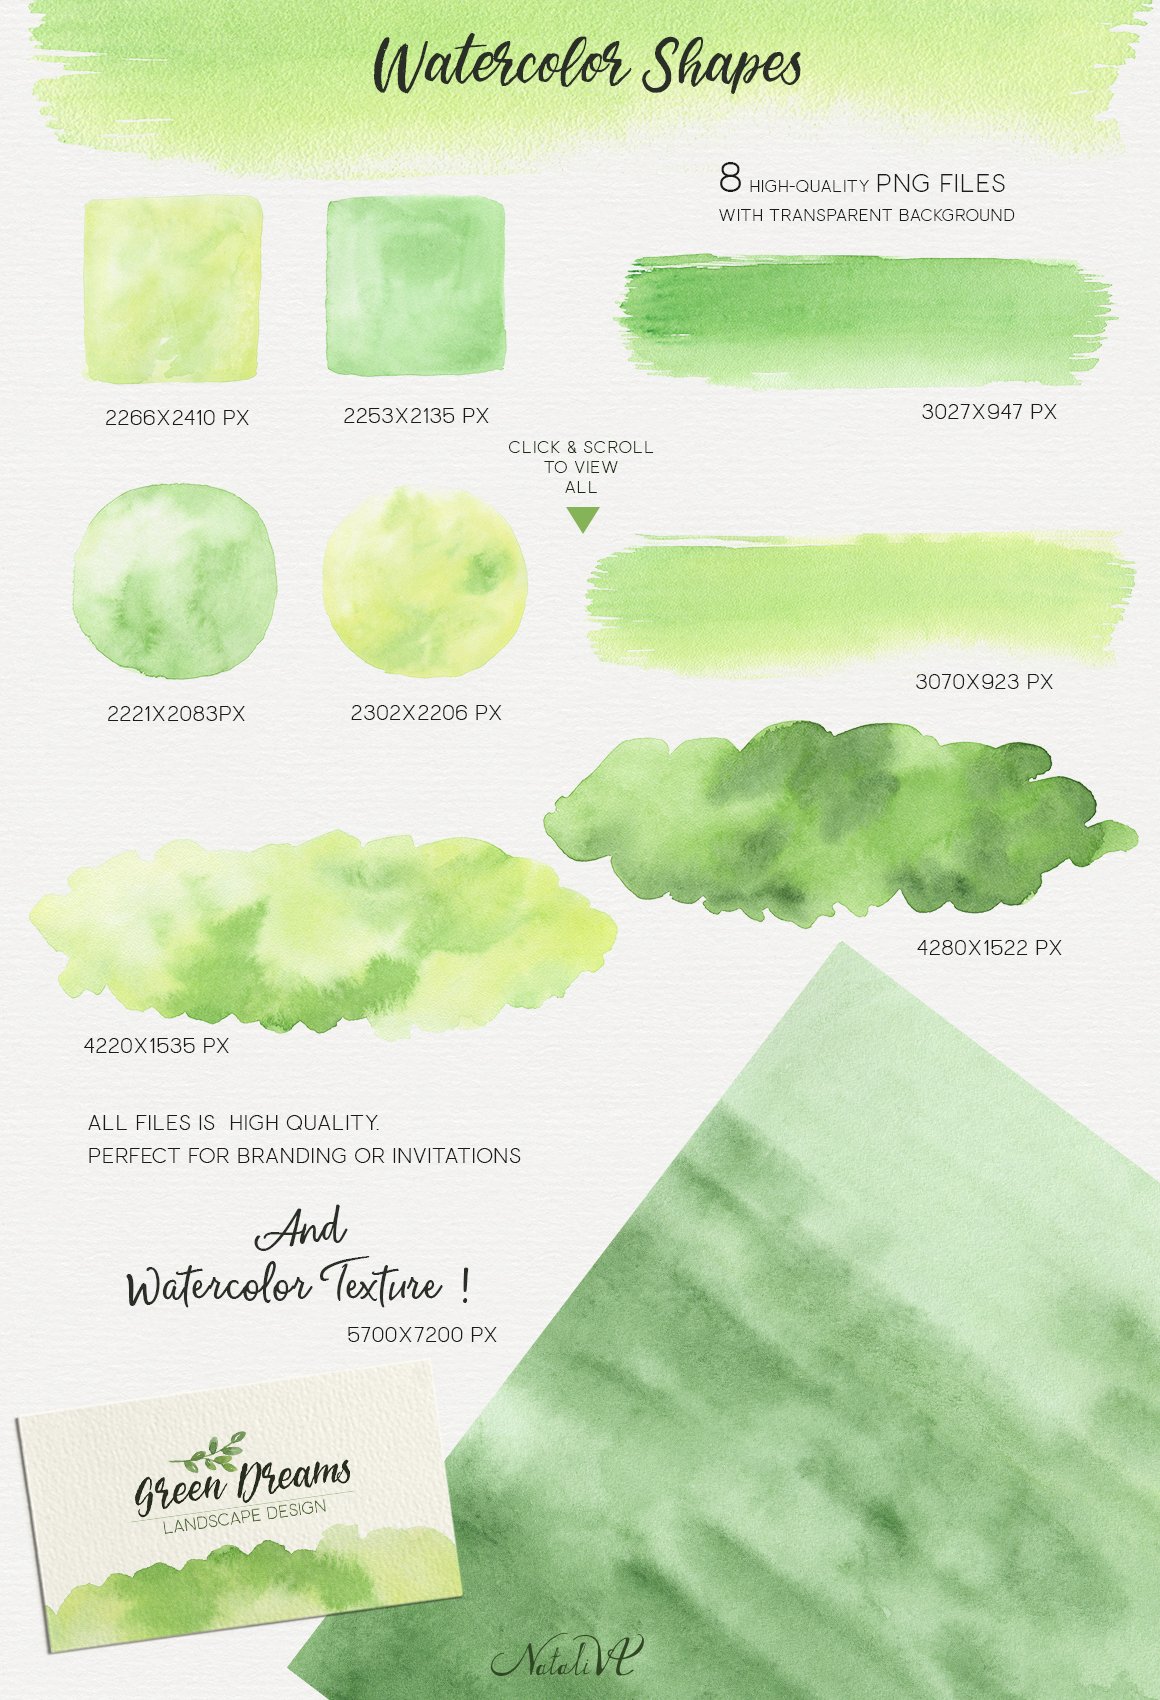 Green Dreams Watercolor Design Kit